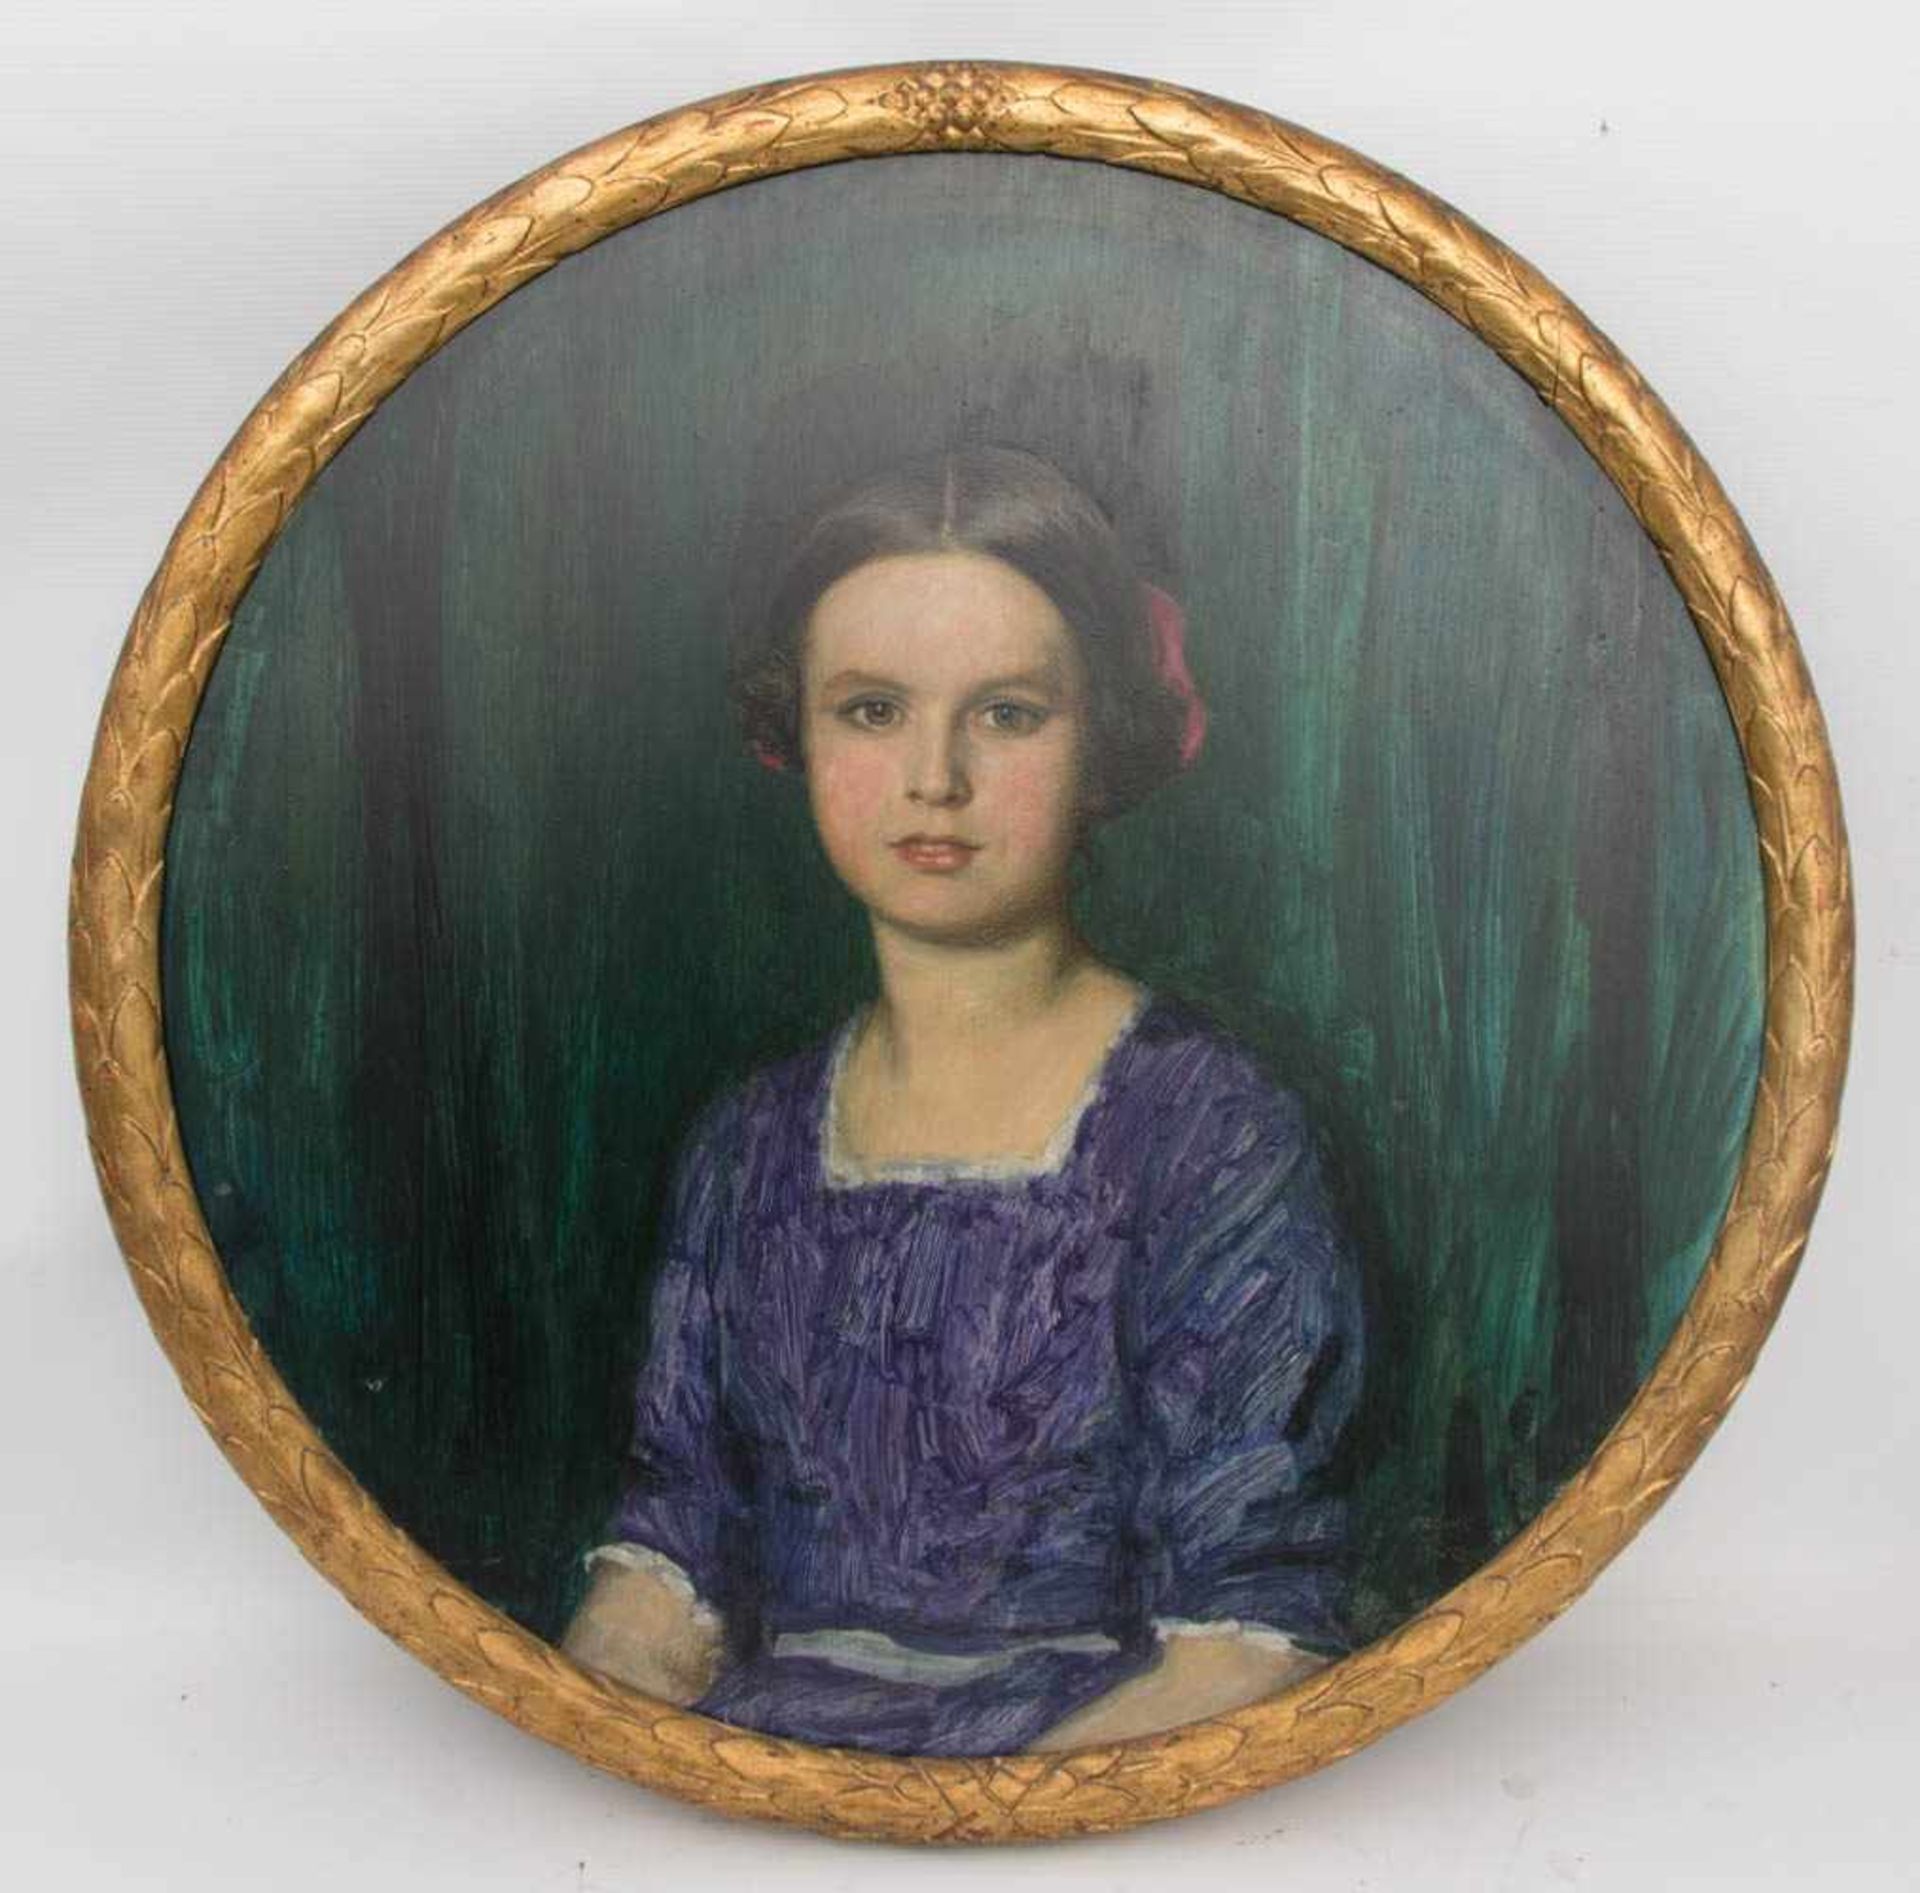 FRANZ VON STUCK, Portrait der Emily Delbrück, Öl auf Platte, München, 1913.Das Gemälde des